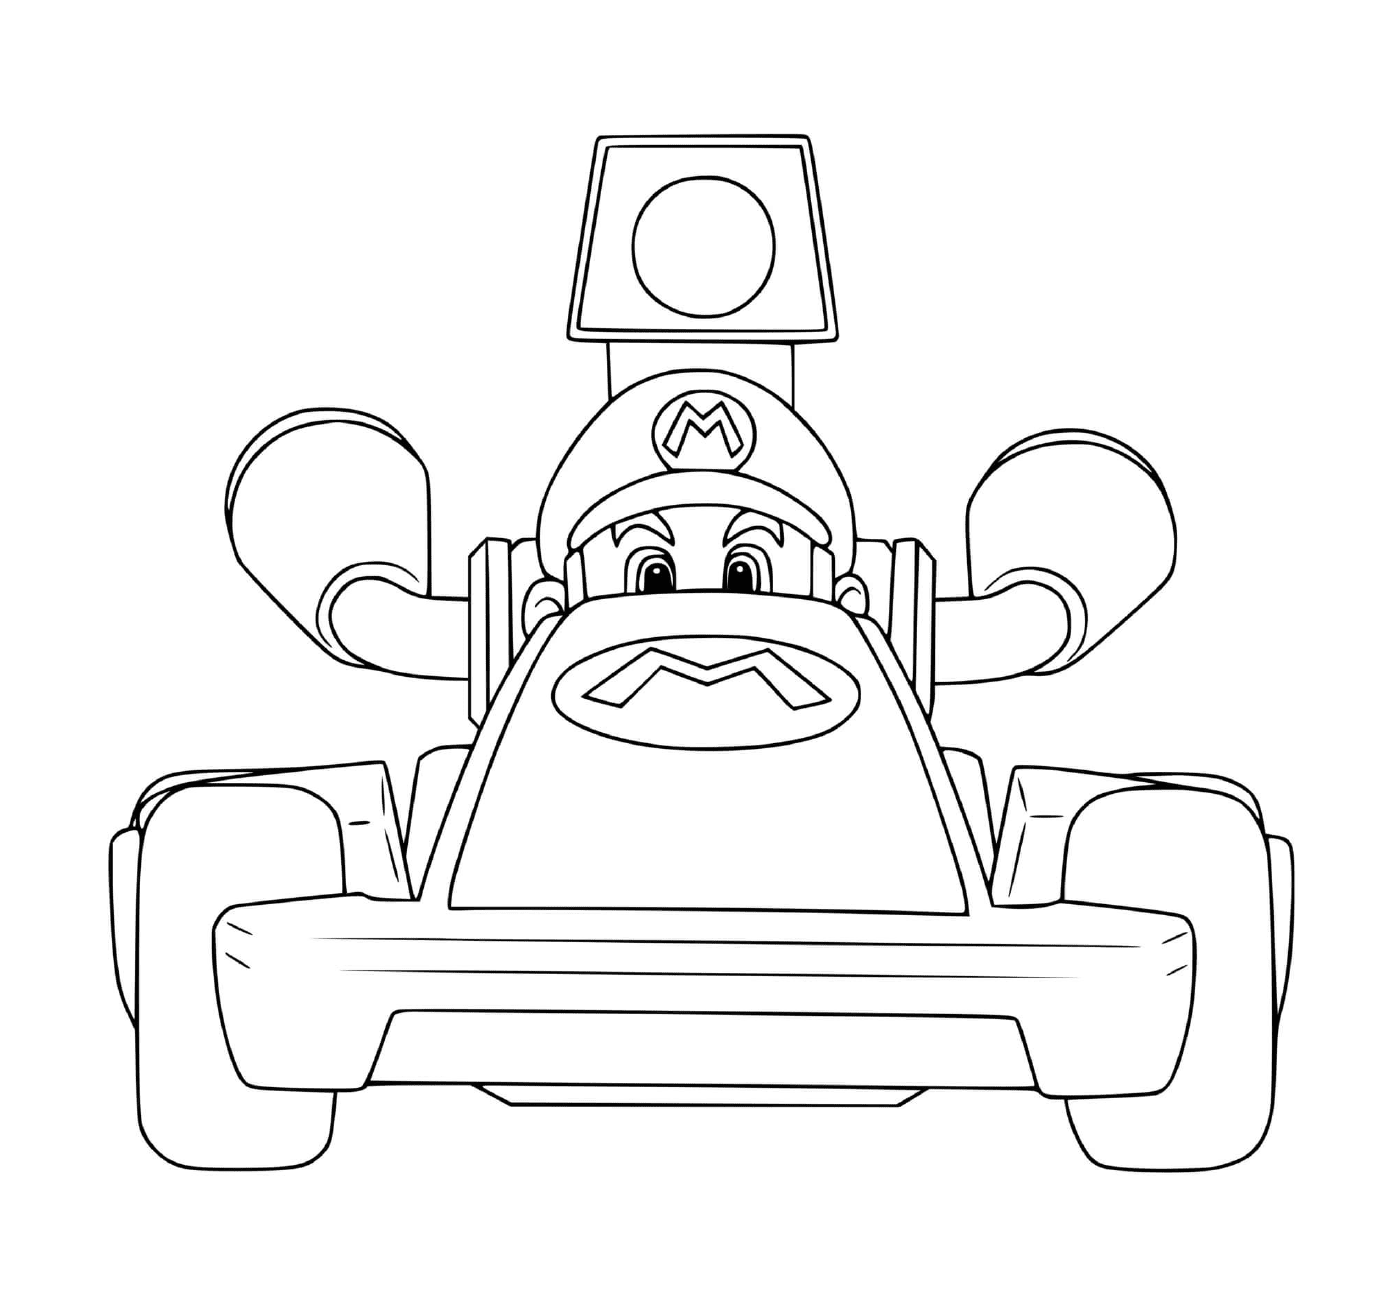   Un personnage de Mario Kart 